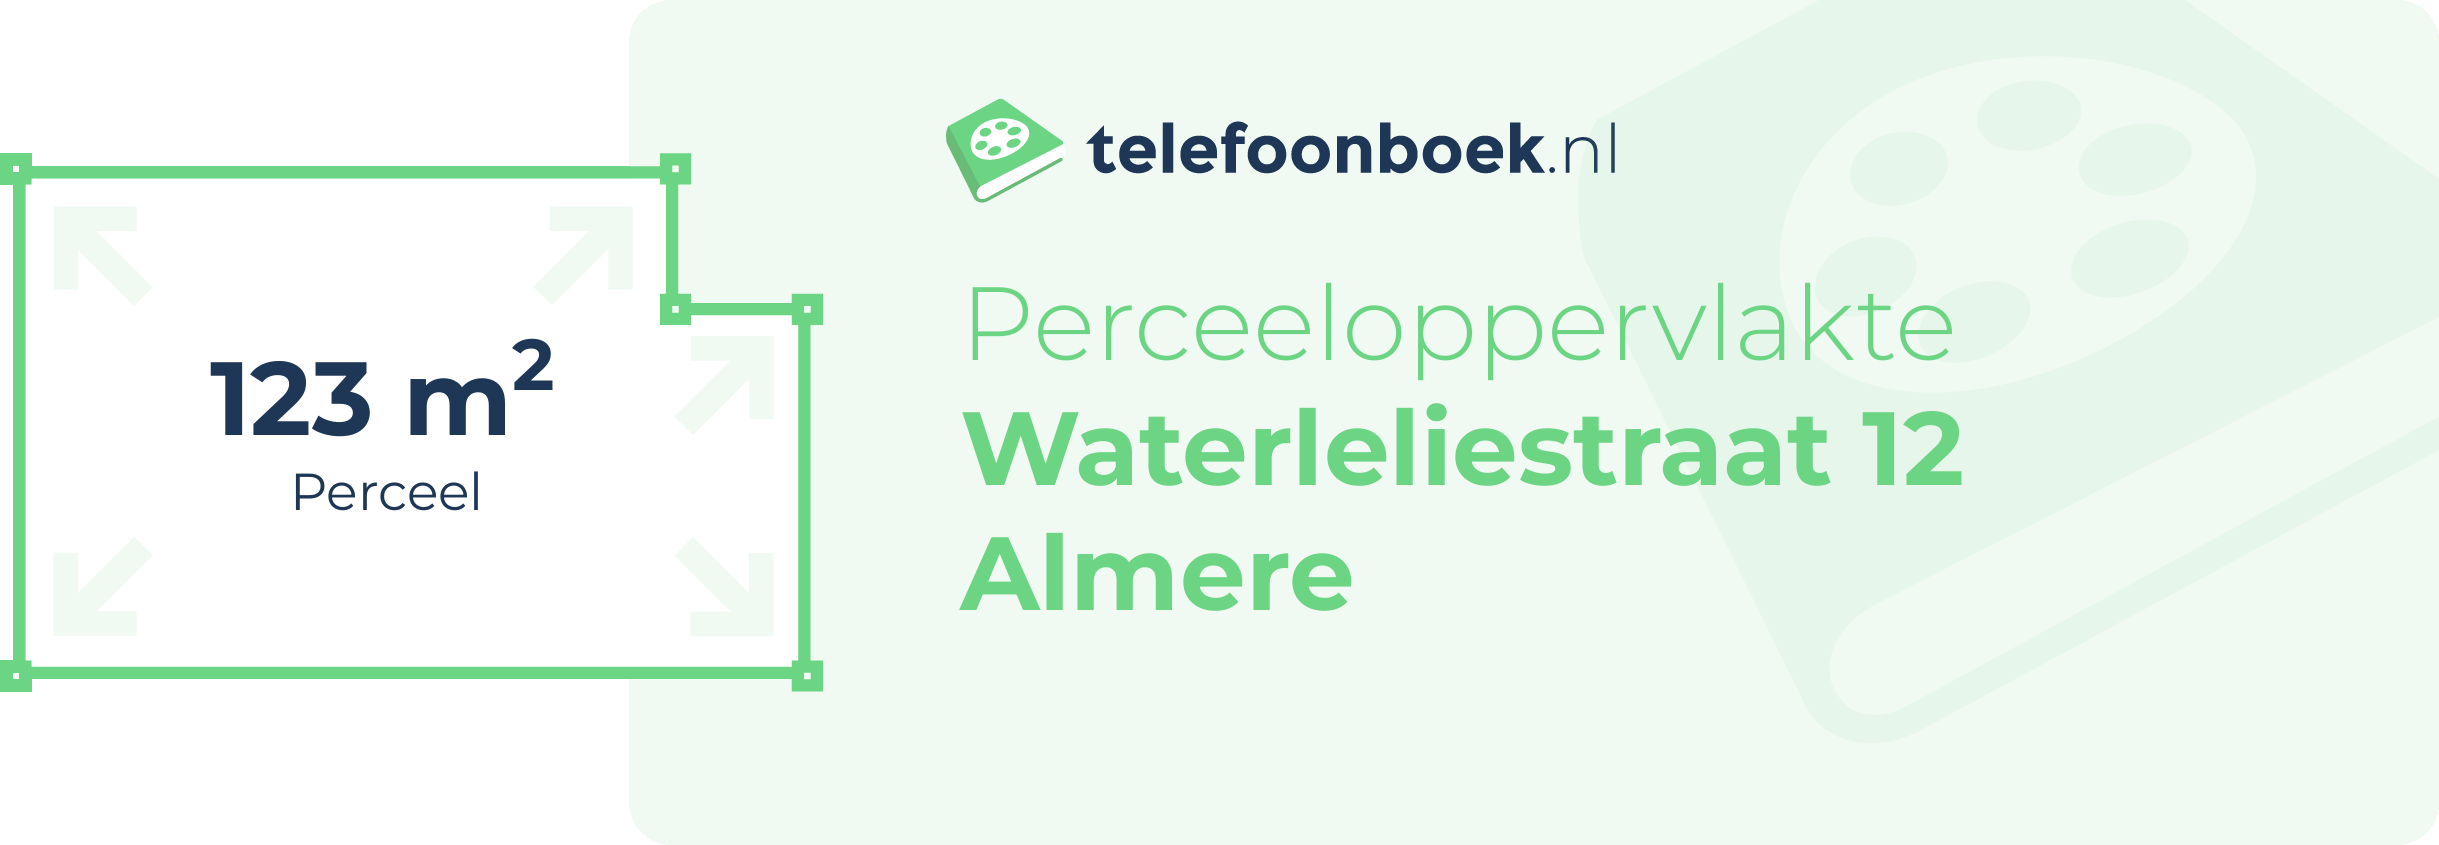 Perceeloppervlakte Waterleliestraat 12 Almere